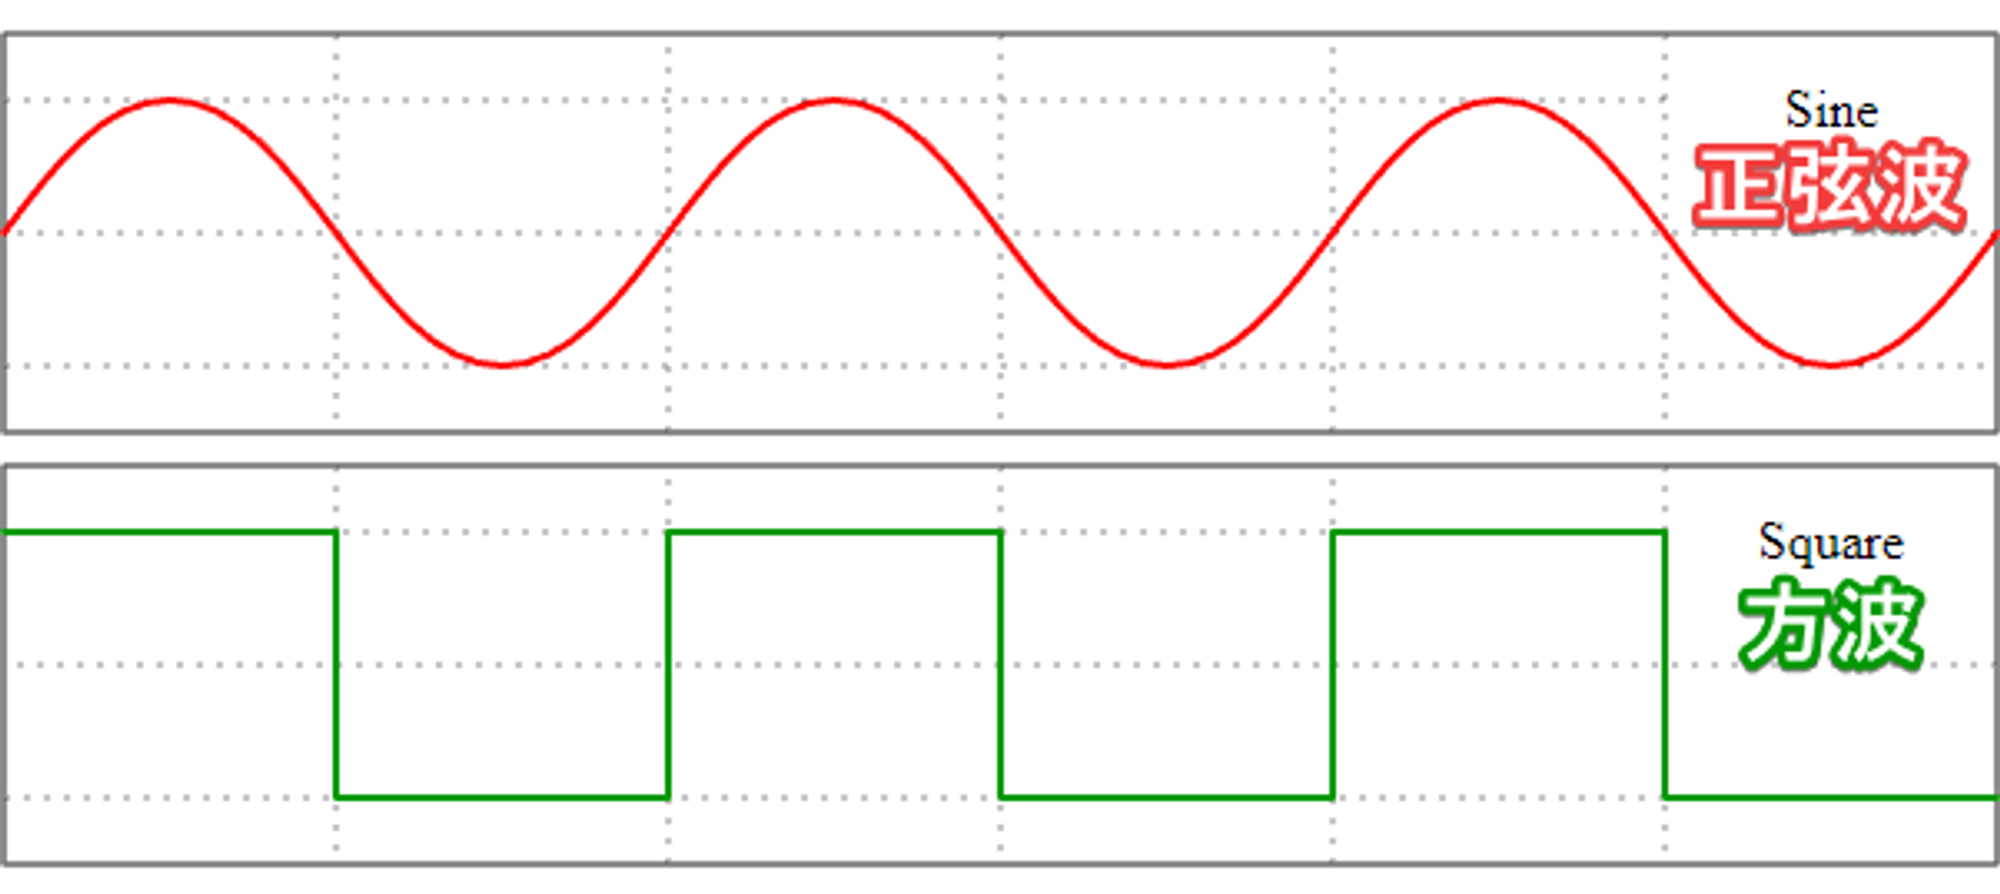 正弦波的明暗變化比較緩和，不像方波直上直下。